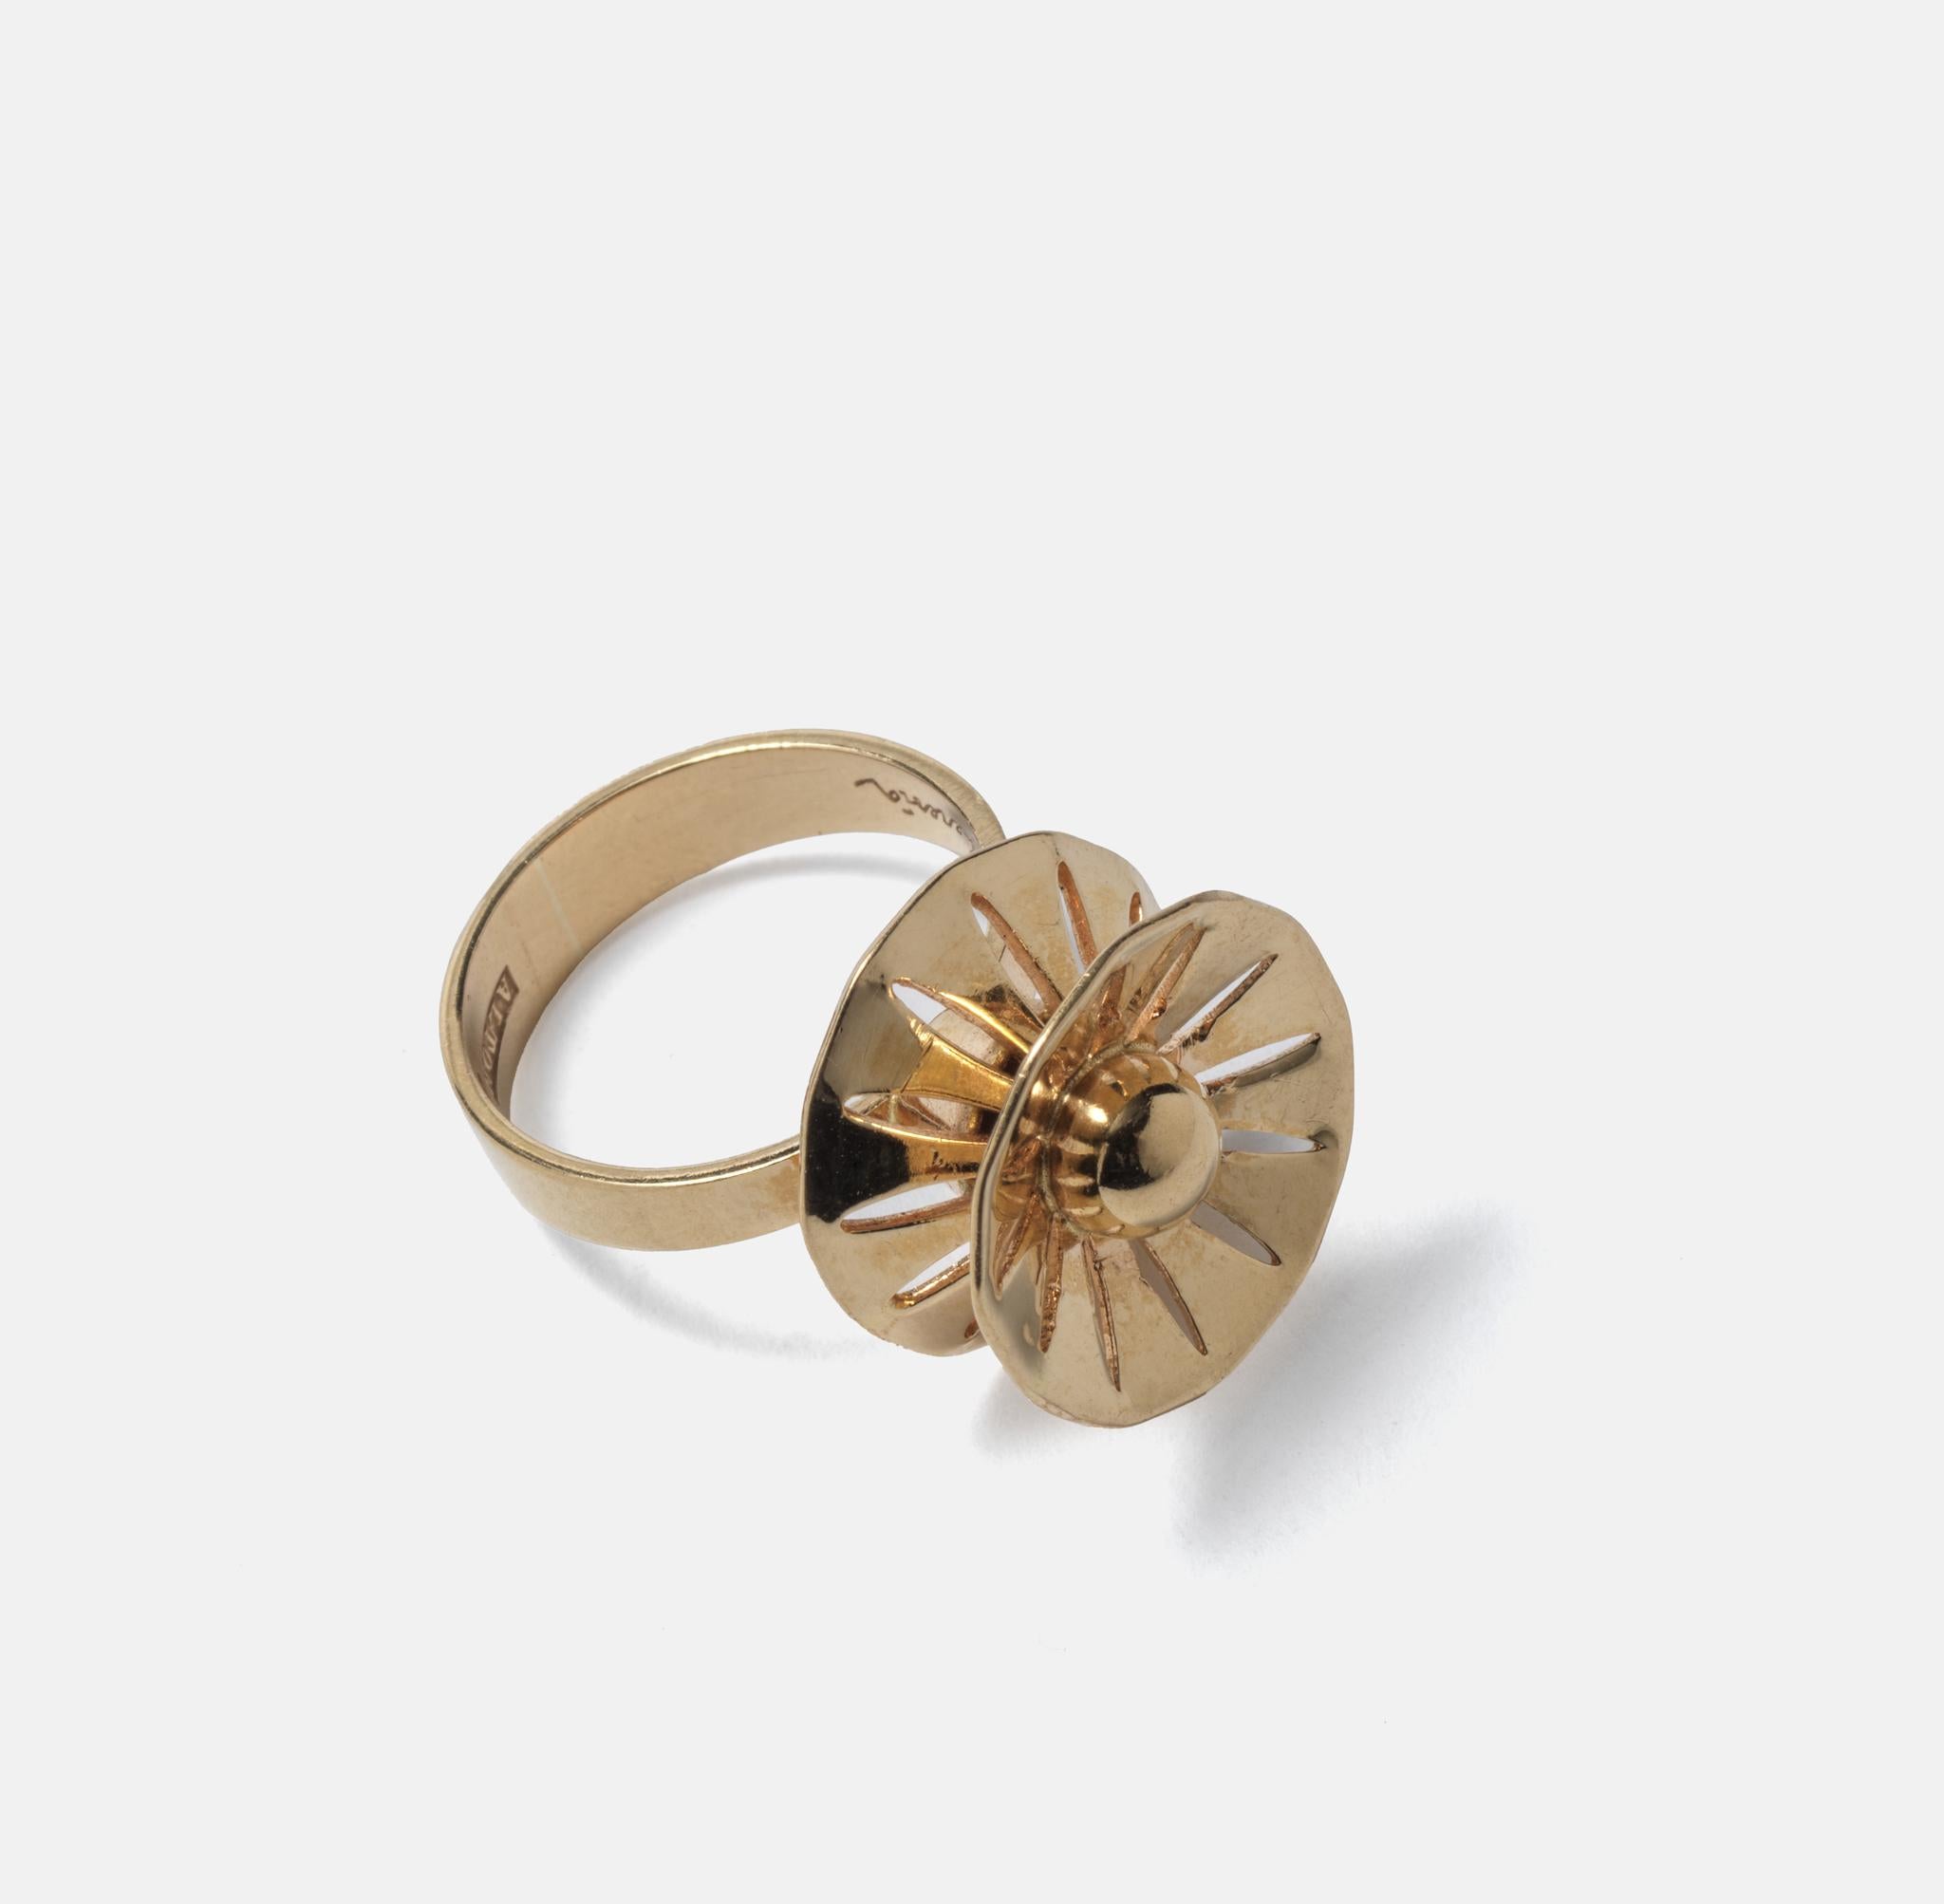 Eine Blume? dieser Ring ist klein und leicht und hat ein blumenähnliches Design. So typisch für die frühen 70er Jahre. Theresia Hvorslev (1935-) war eine schwedische Schmuckdesignerin, die bereits als Teenager begann, Schmuck zu entwerfen und